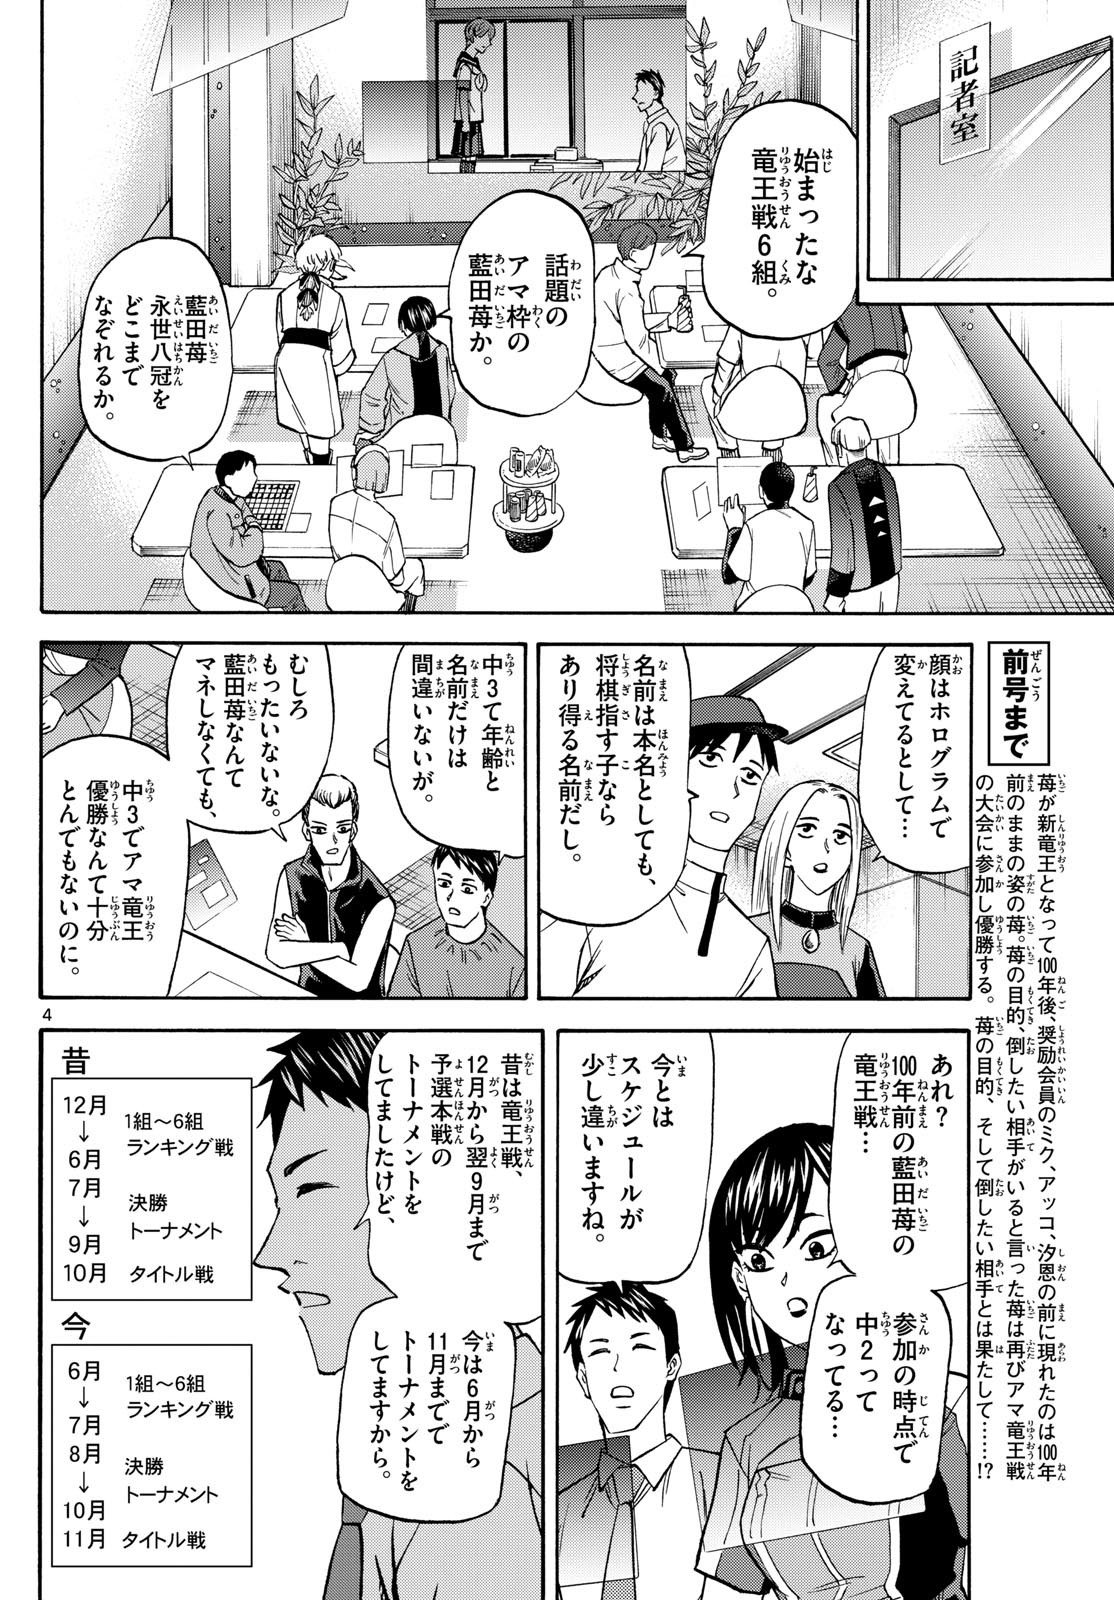 Ryu-to-Ichigo - Chapter 189 - Page 4